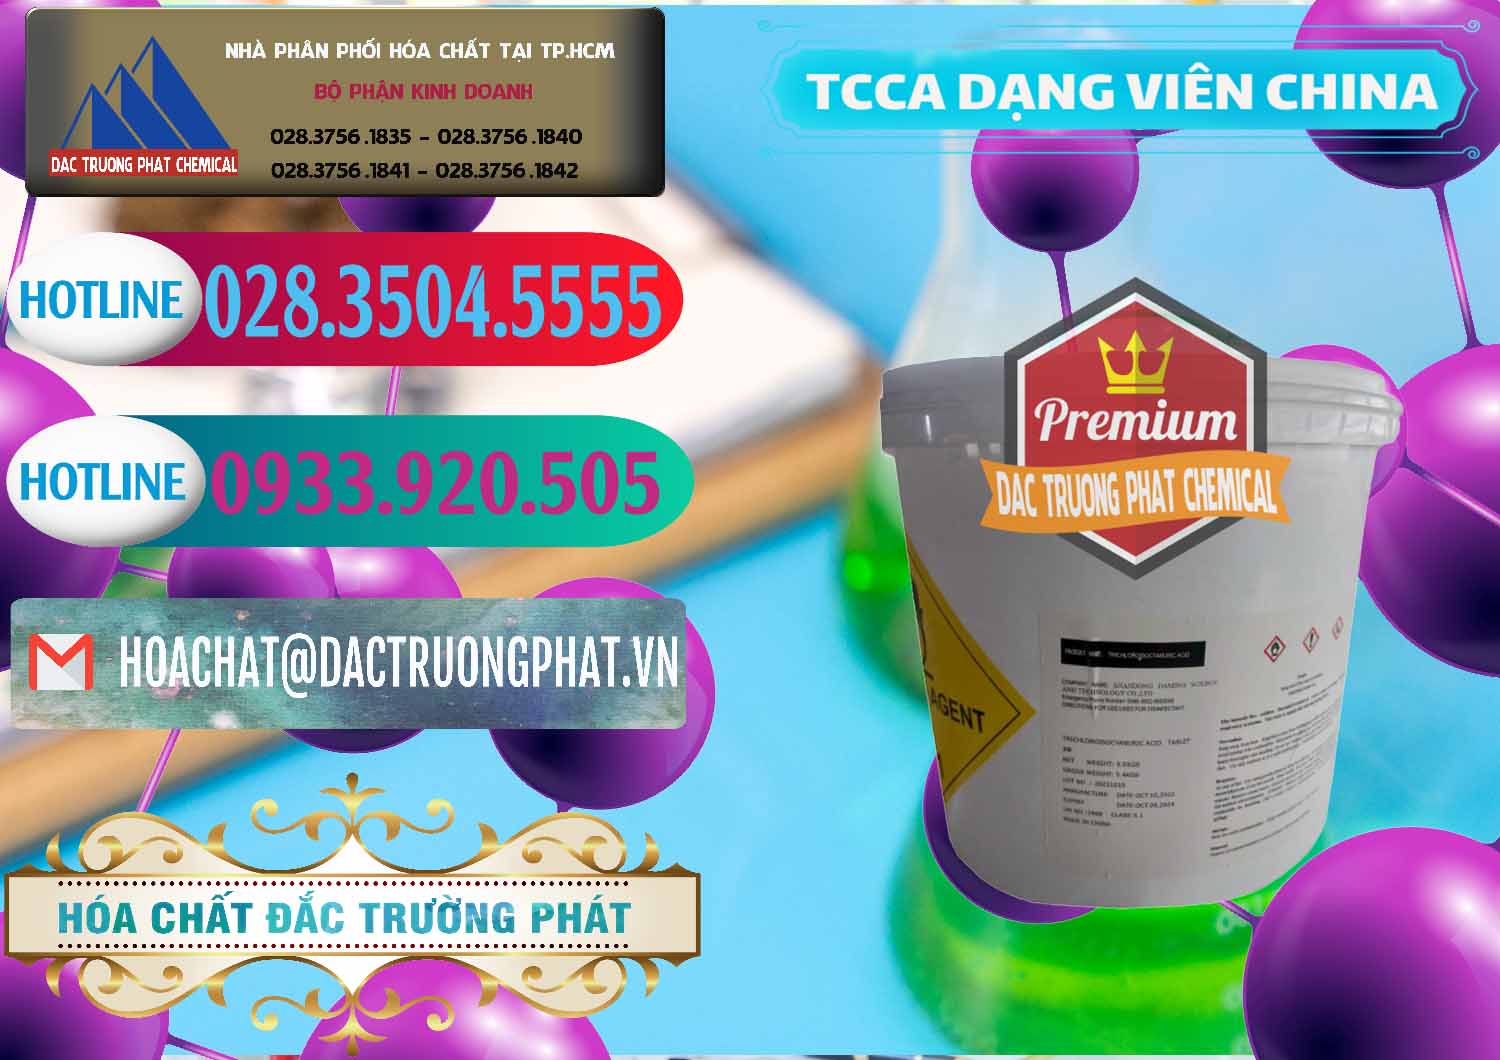 Cty cung cấp & bán TCCA - Acid Trichloroisocyanuric Dạng Viên Thùng 5kg Trung Quốc China - 0379 - Chuyên cung ứng và phân phối hóa chất tại TP.HCM - truongphat.vn